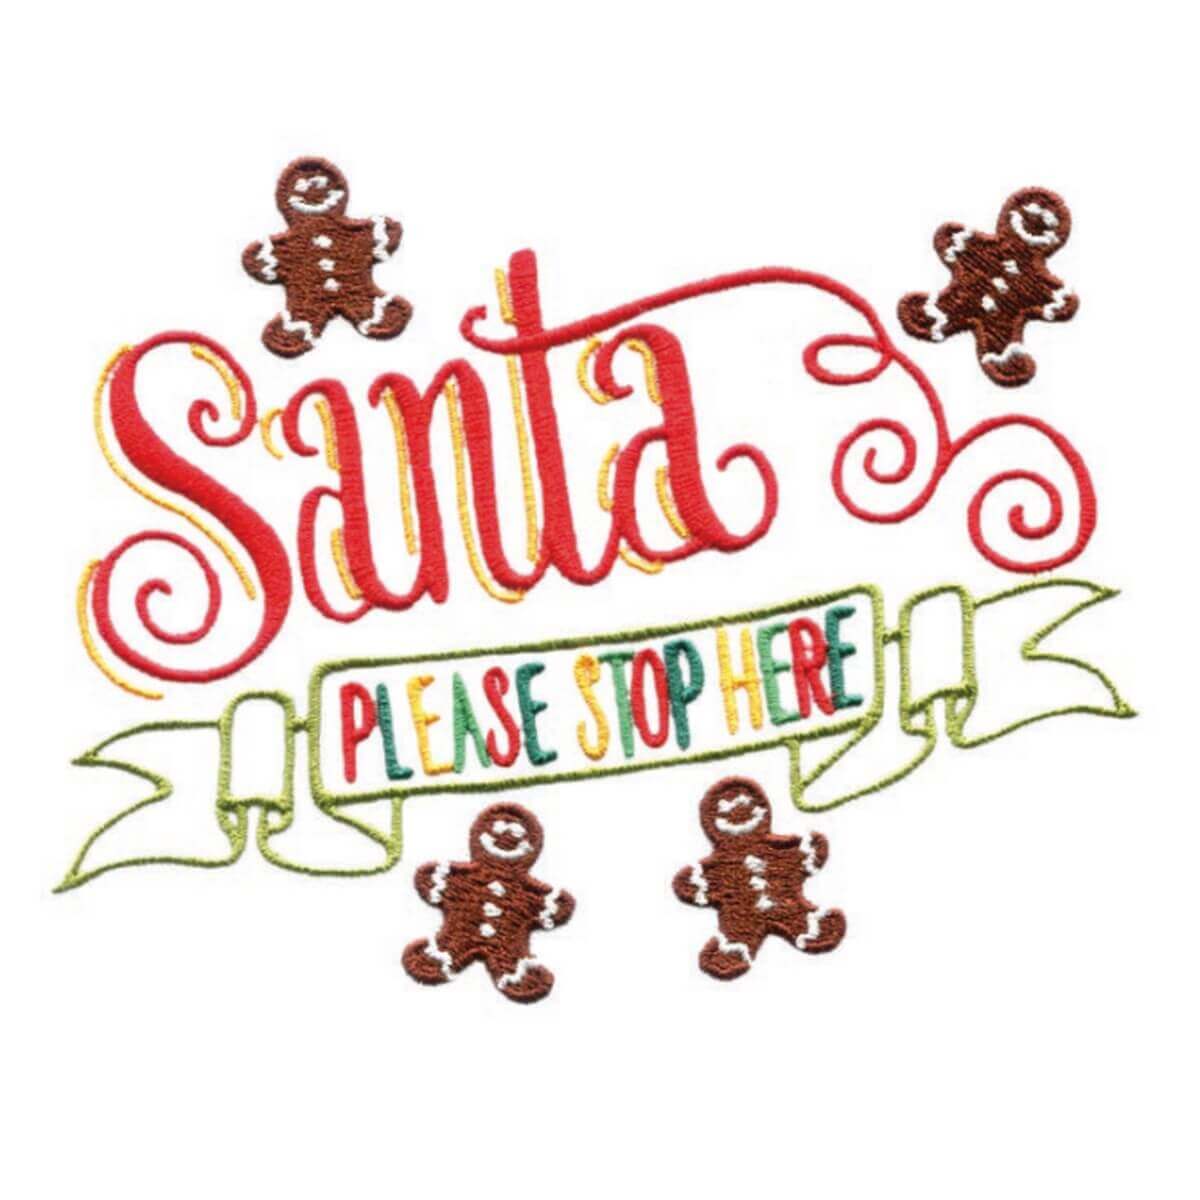 Stickdesign Santa Sayings: Santa Please Stop Here (Download)